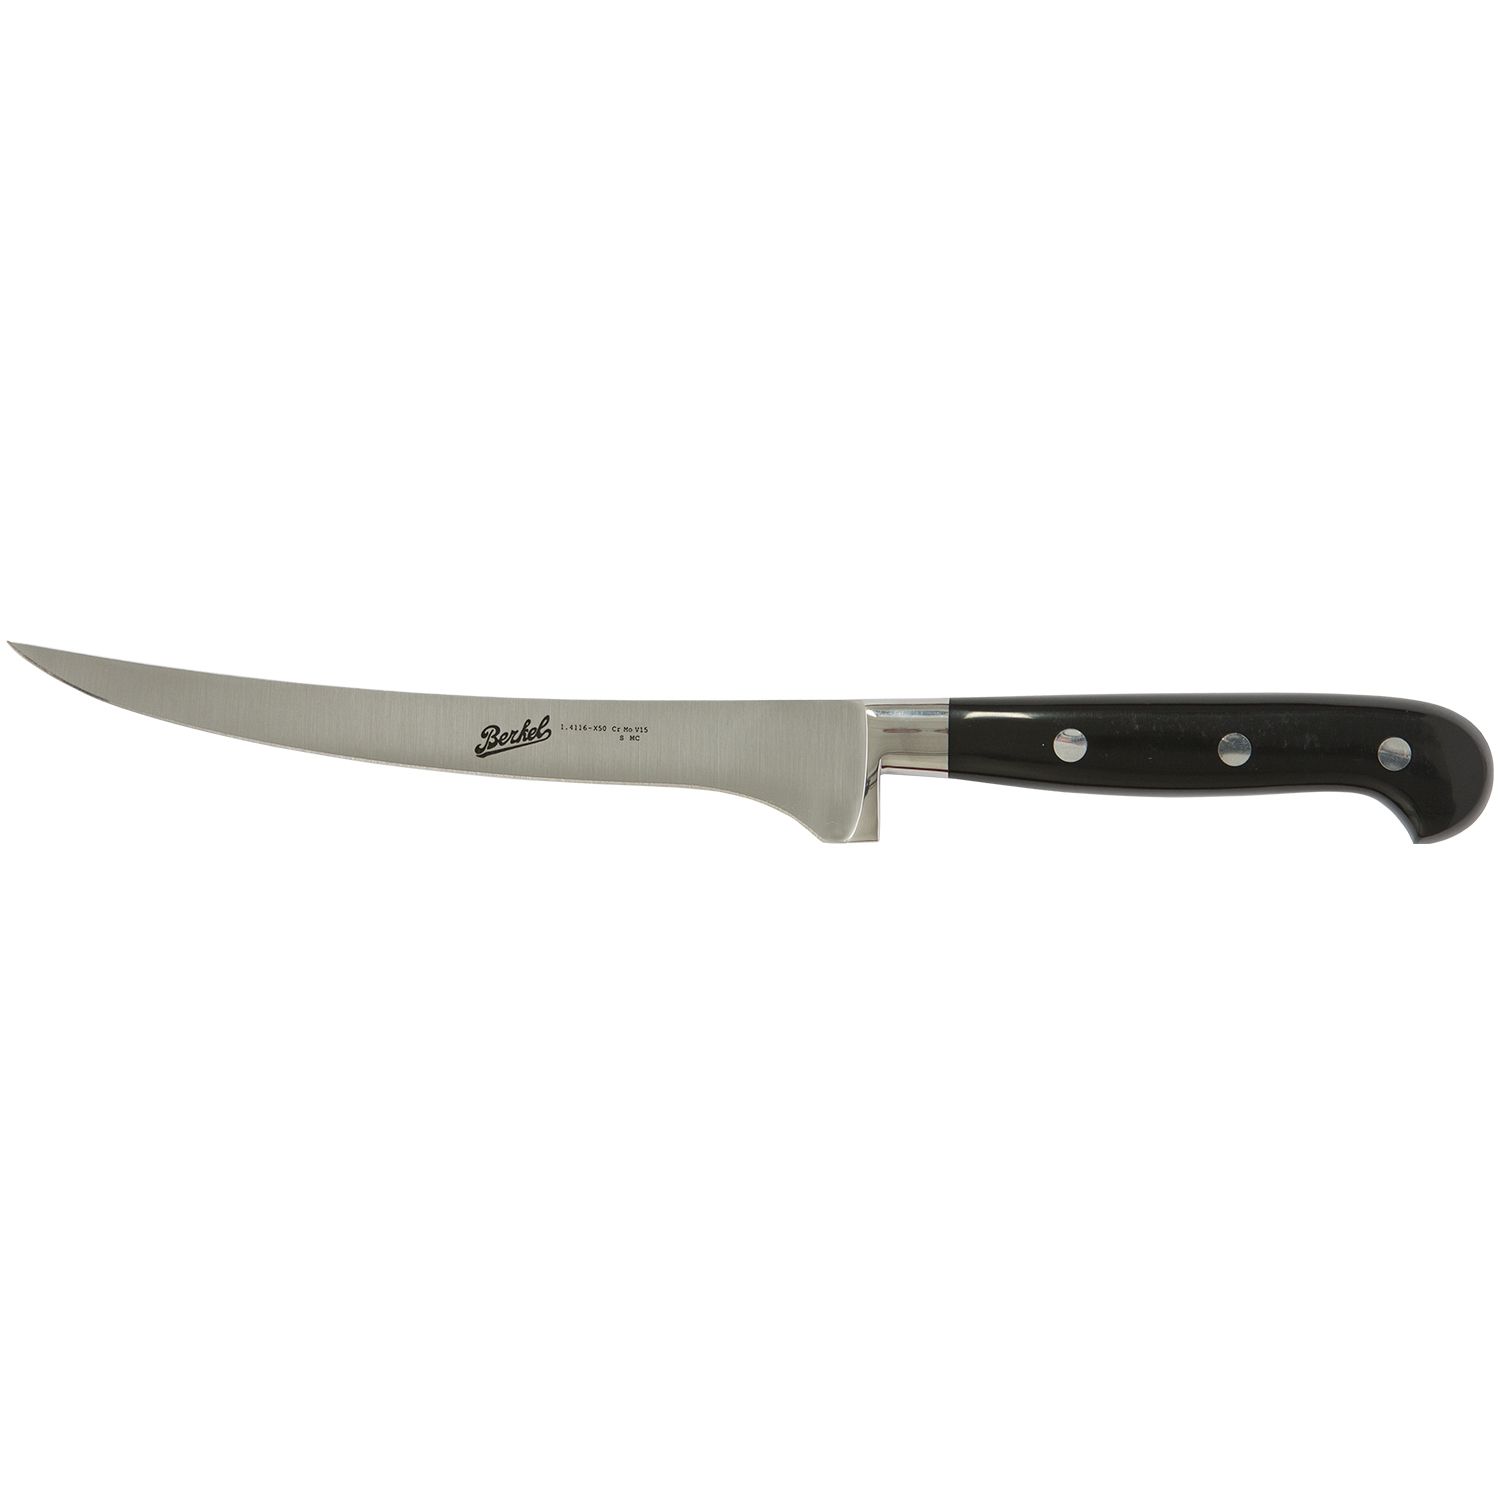 Fillet knife cm.18 Stainless Steel Berkel Adhoc Handle Glossy Black Resin